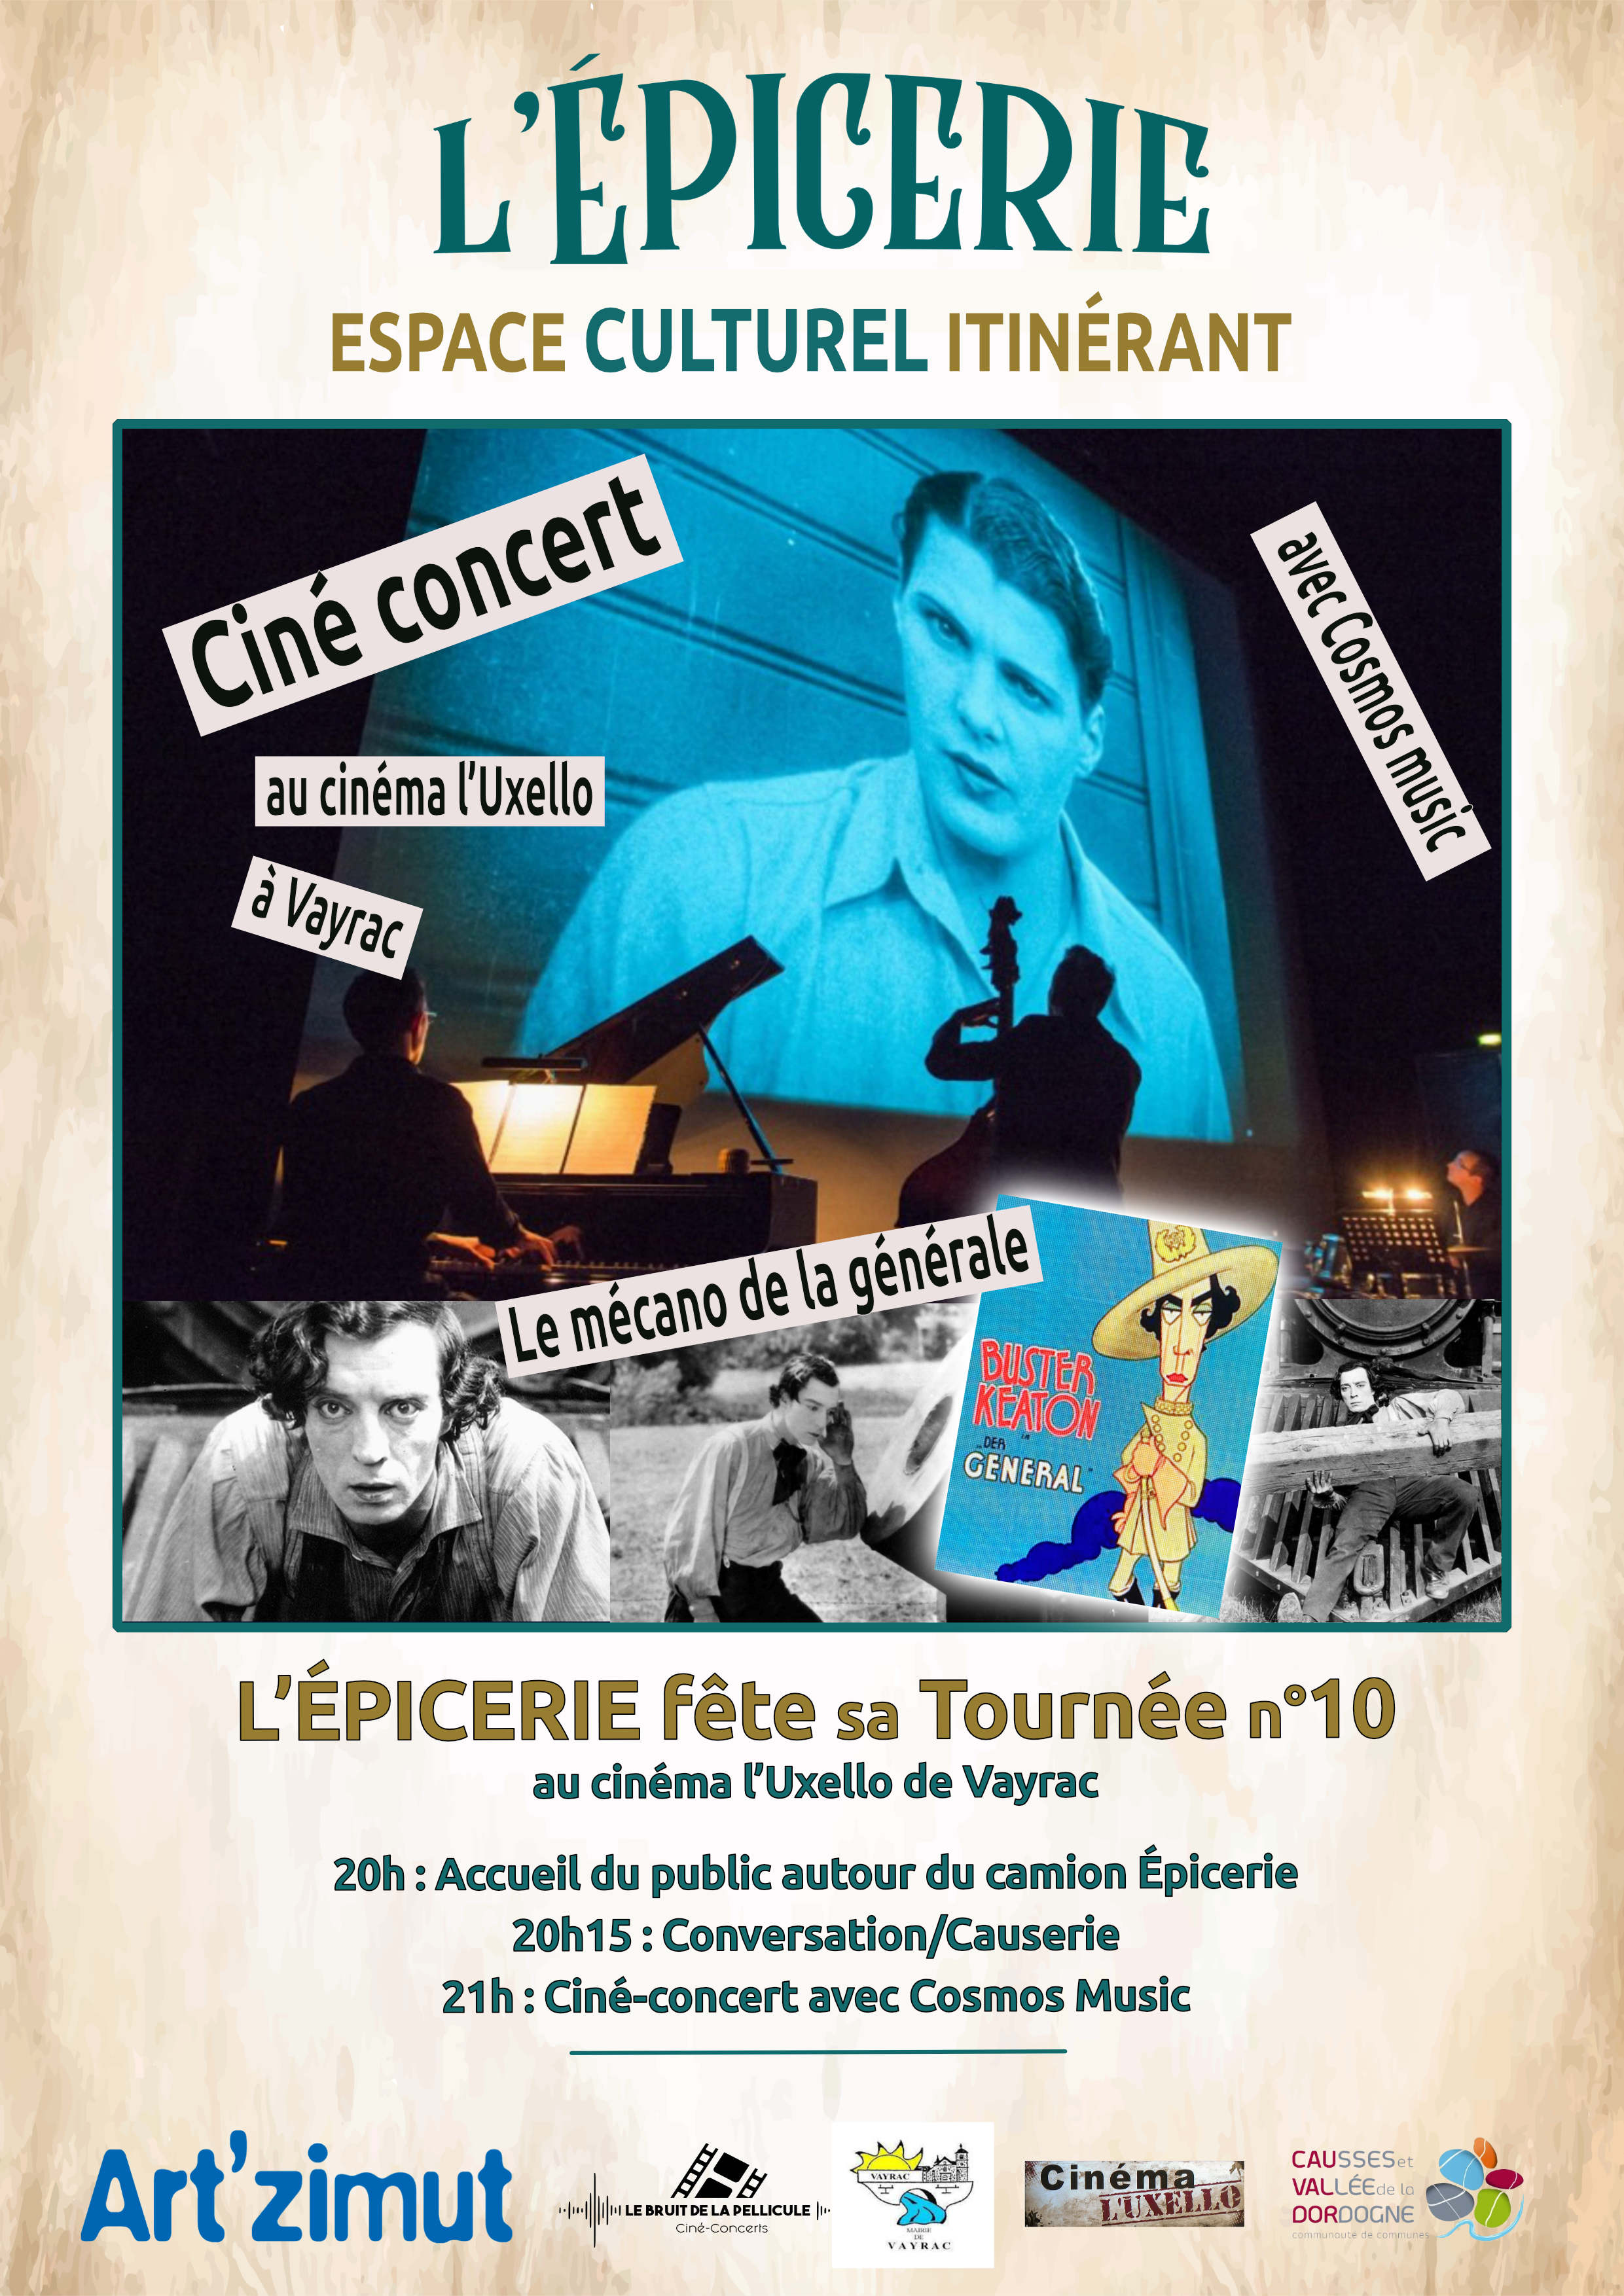 Figeac : L'Epicerie Culturelle - Ciné-concert avec Cosmos Music